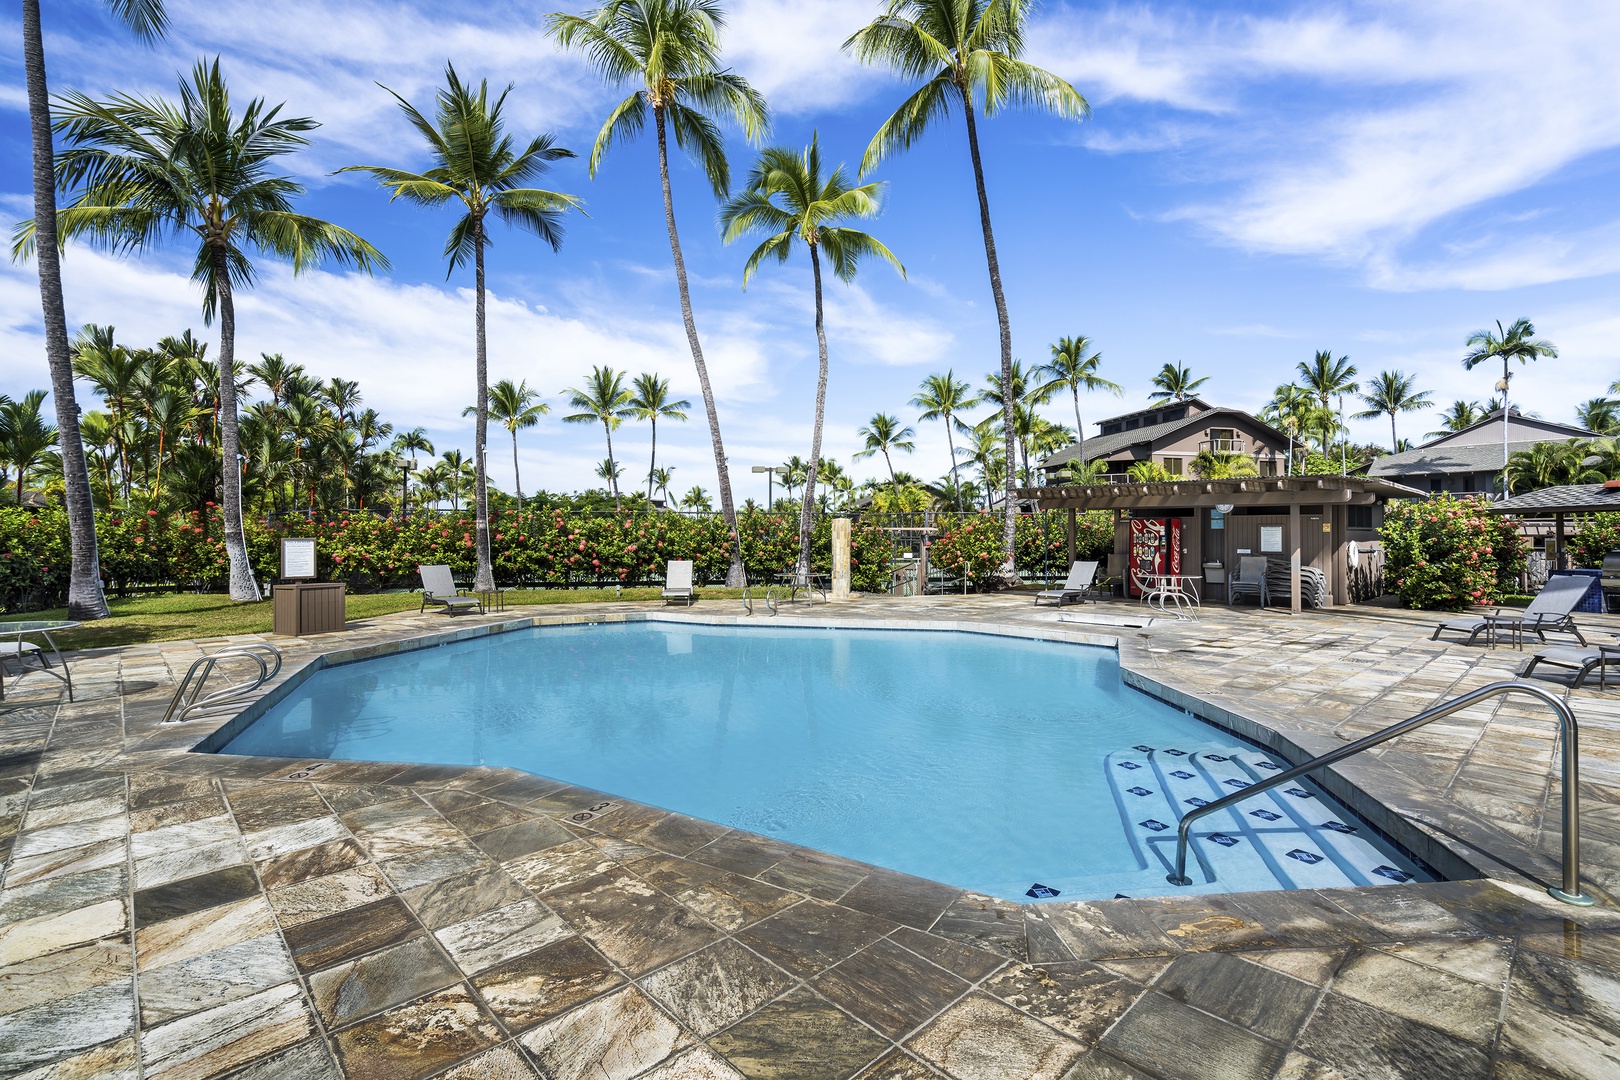 Kailua Kona Vacation Rentals, Kanaloa at Kona 3304 - The second pool at the complex